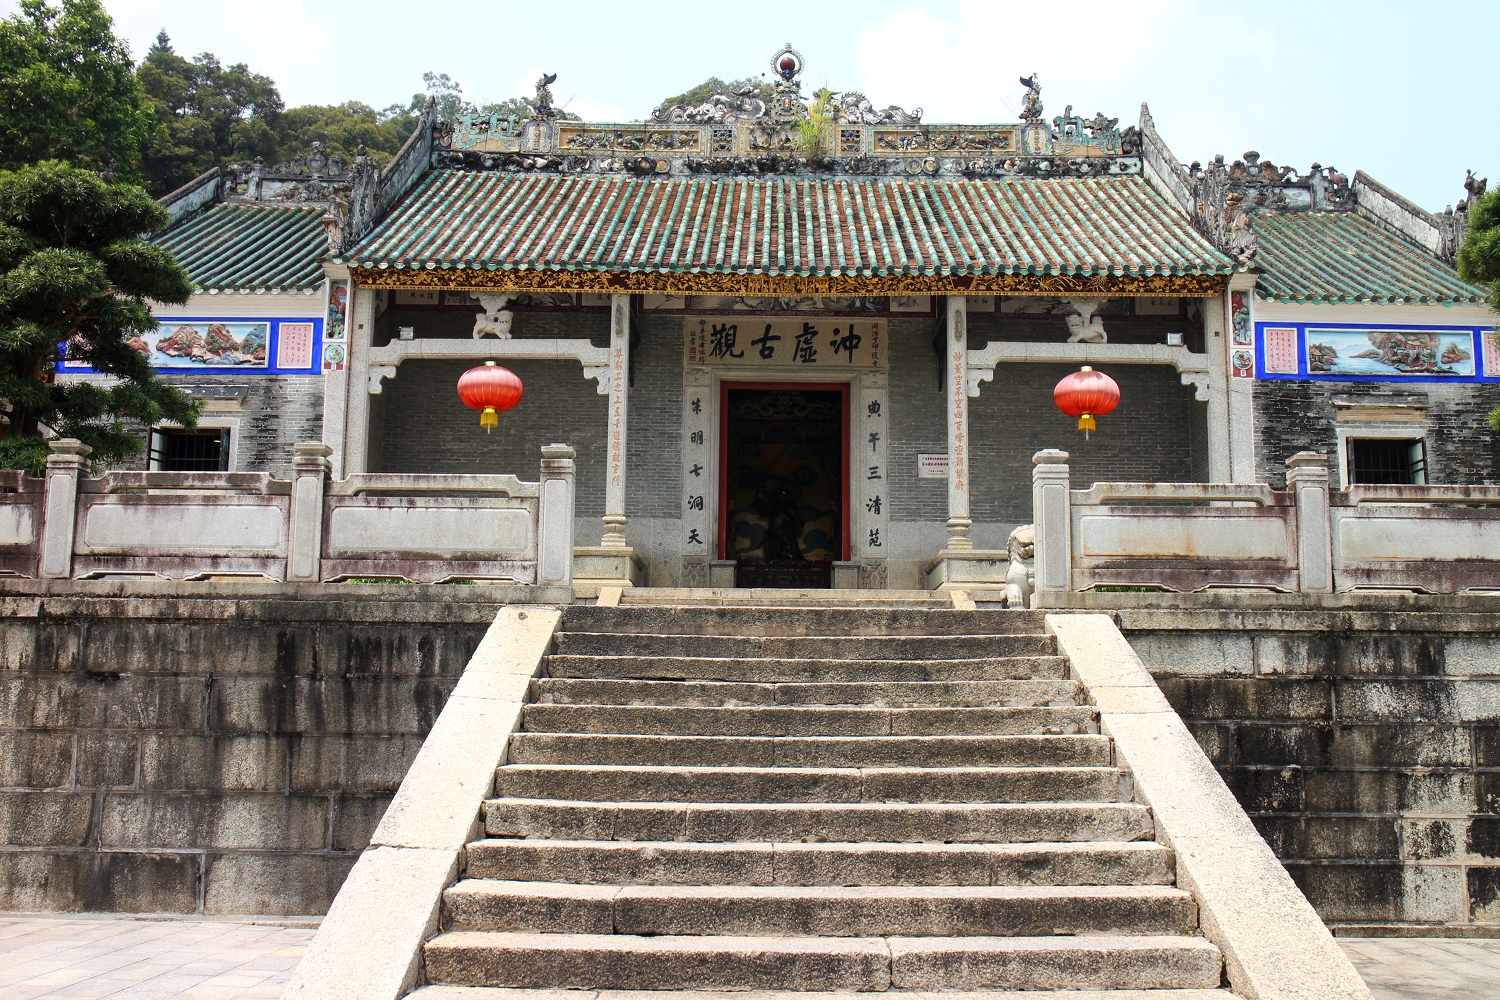 Chongxu Temple is Mount Luofu's spiritual heart. Image by Thomas Bird / londoninfopage